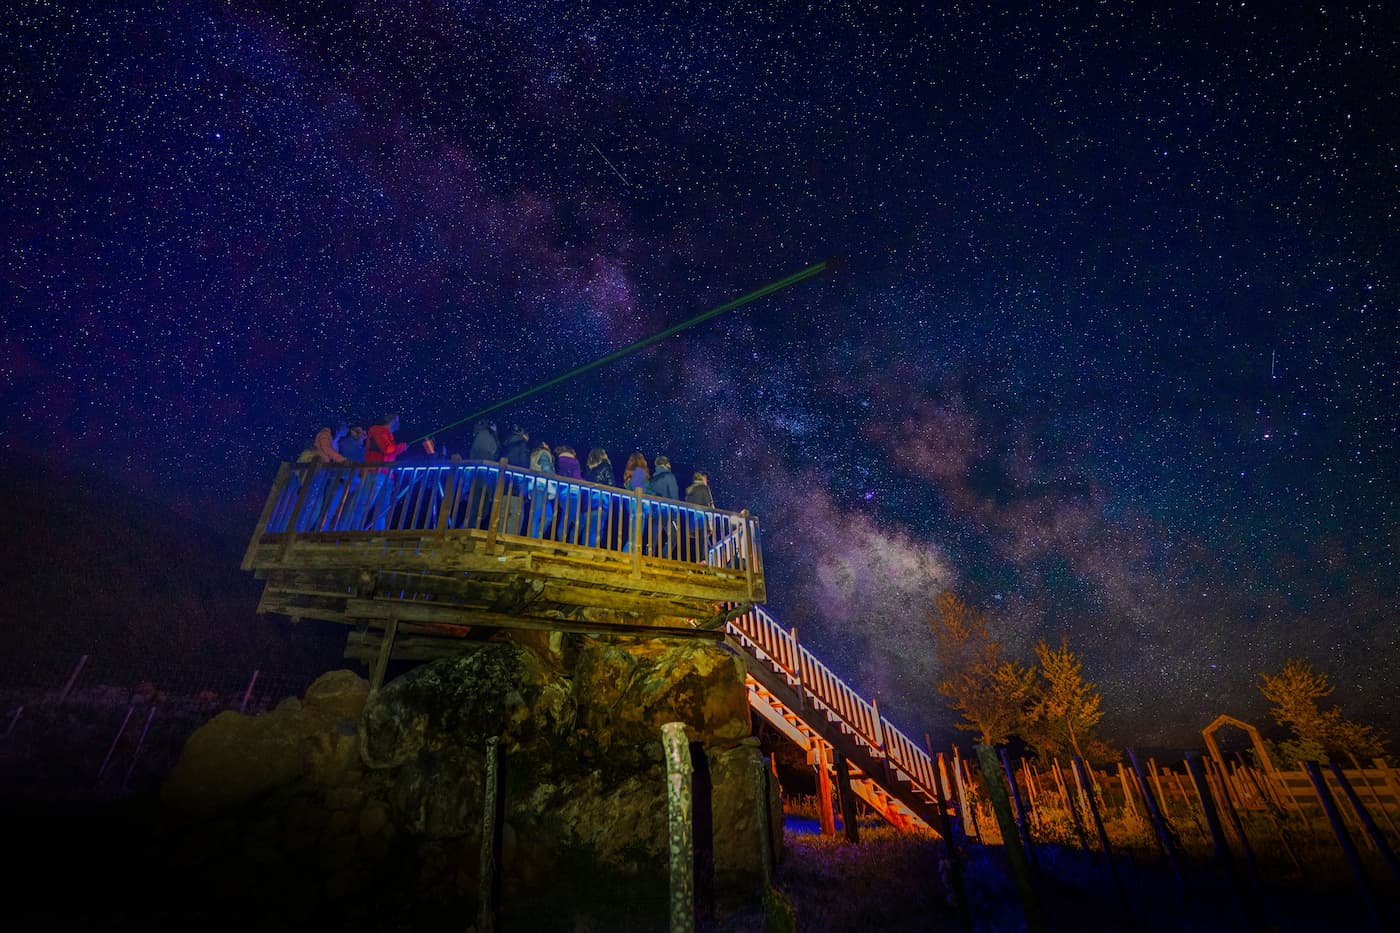 Astroturismo en Moliniás: ¡Conoce el cielo nocturno del Pirineo Aragonés!